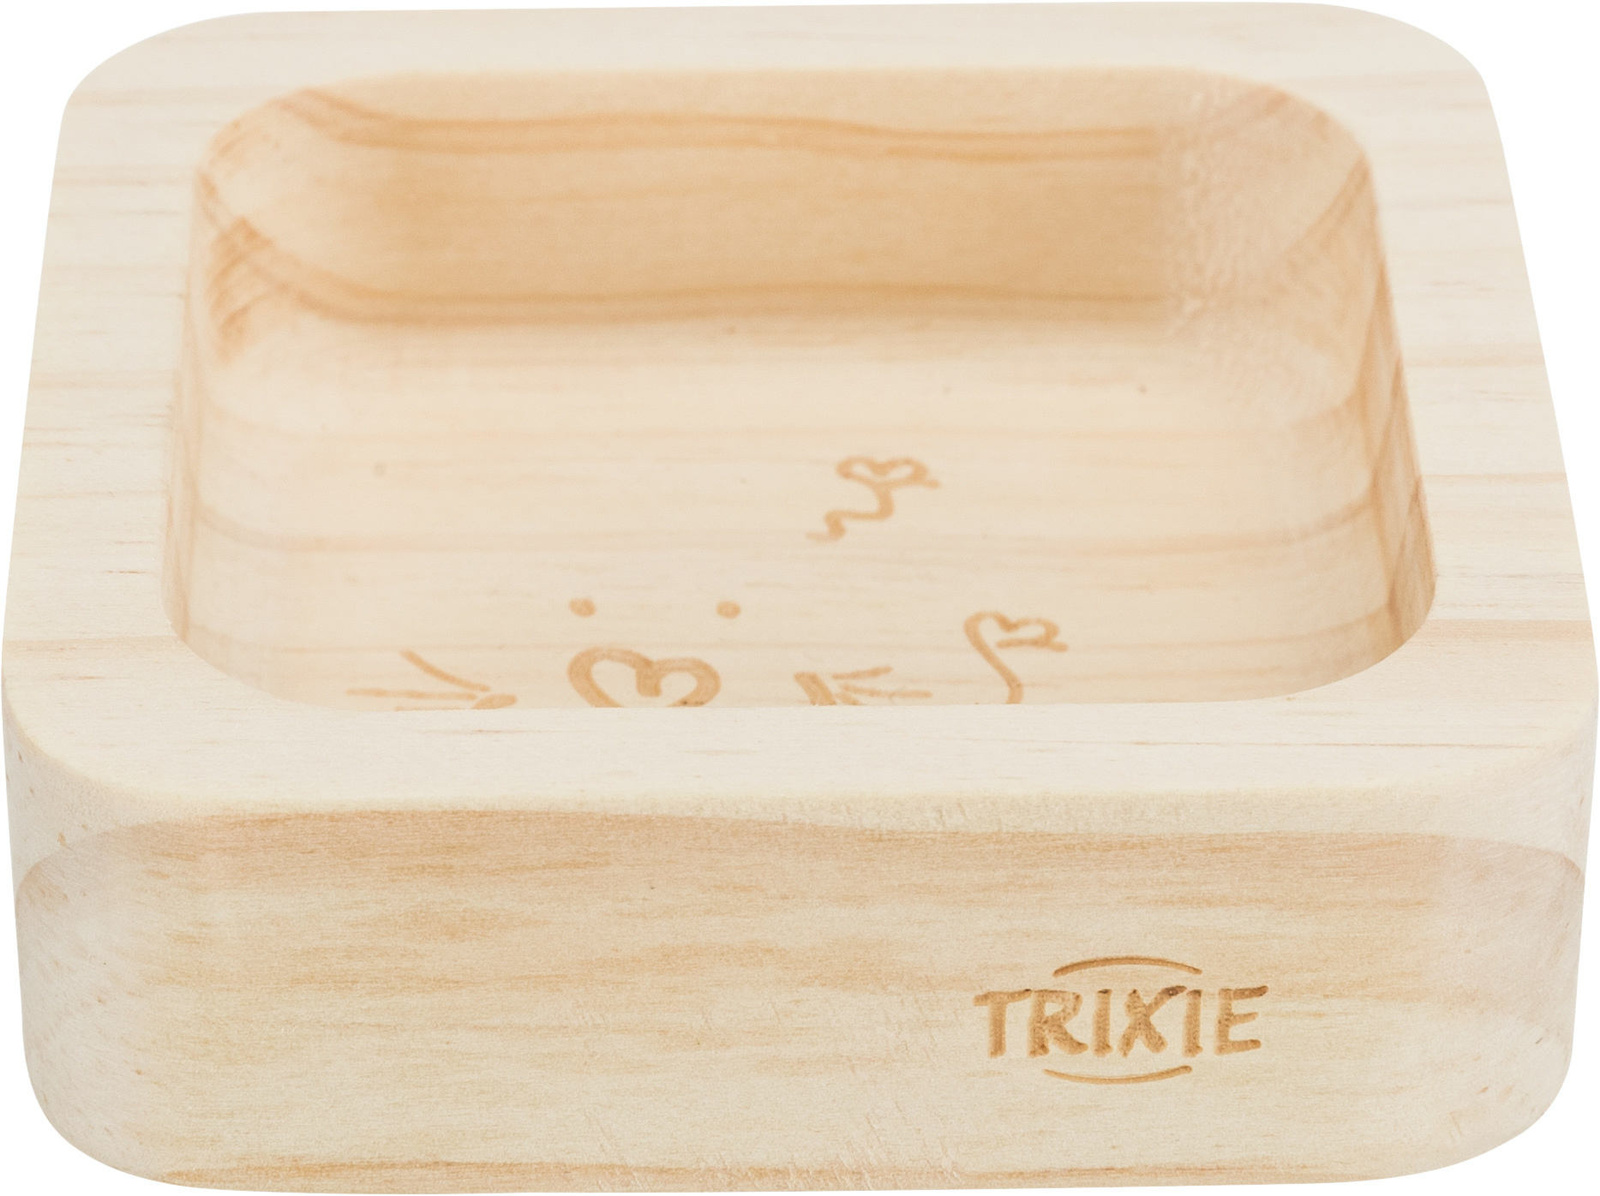 Trixie Trixie миска, дерево (8 см) цена и фото